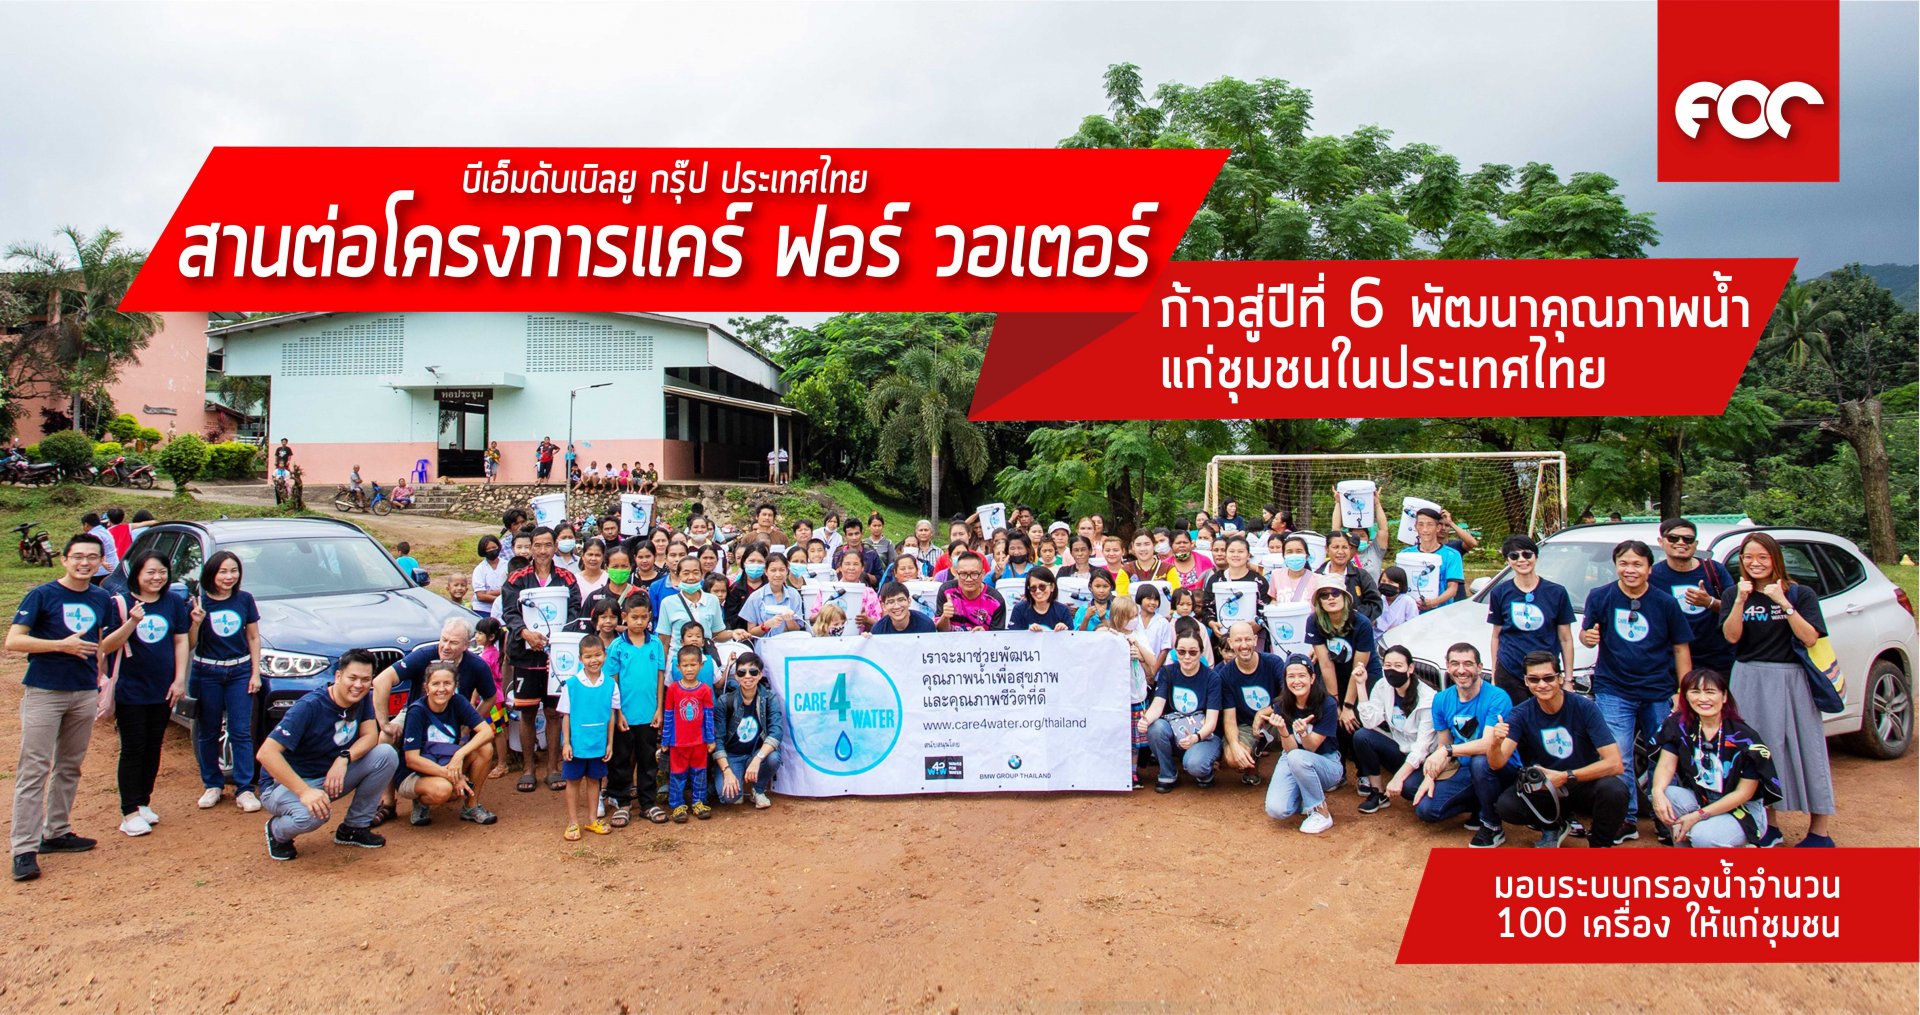 บีเอ็มดับเบิลยู กรุ๊ป ประเทศไทย นำโครงการแคร์ ฟอร์ วอเตอร์ ก้าวสู่ปีที่หกเดินหน้าพัฒนาคุณภาพน้ำแก่ชุมชนในประเทศไทยต่อเนื่อง 